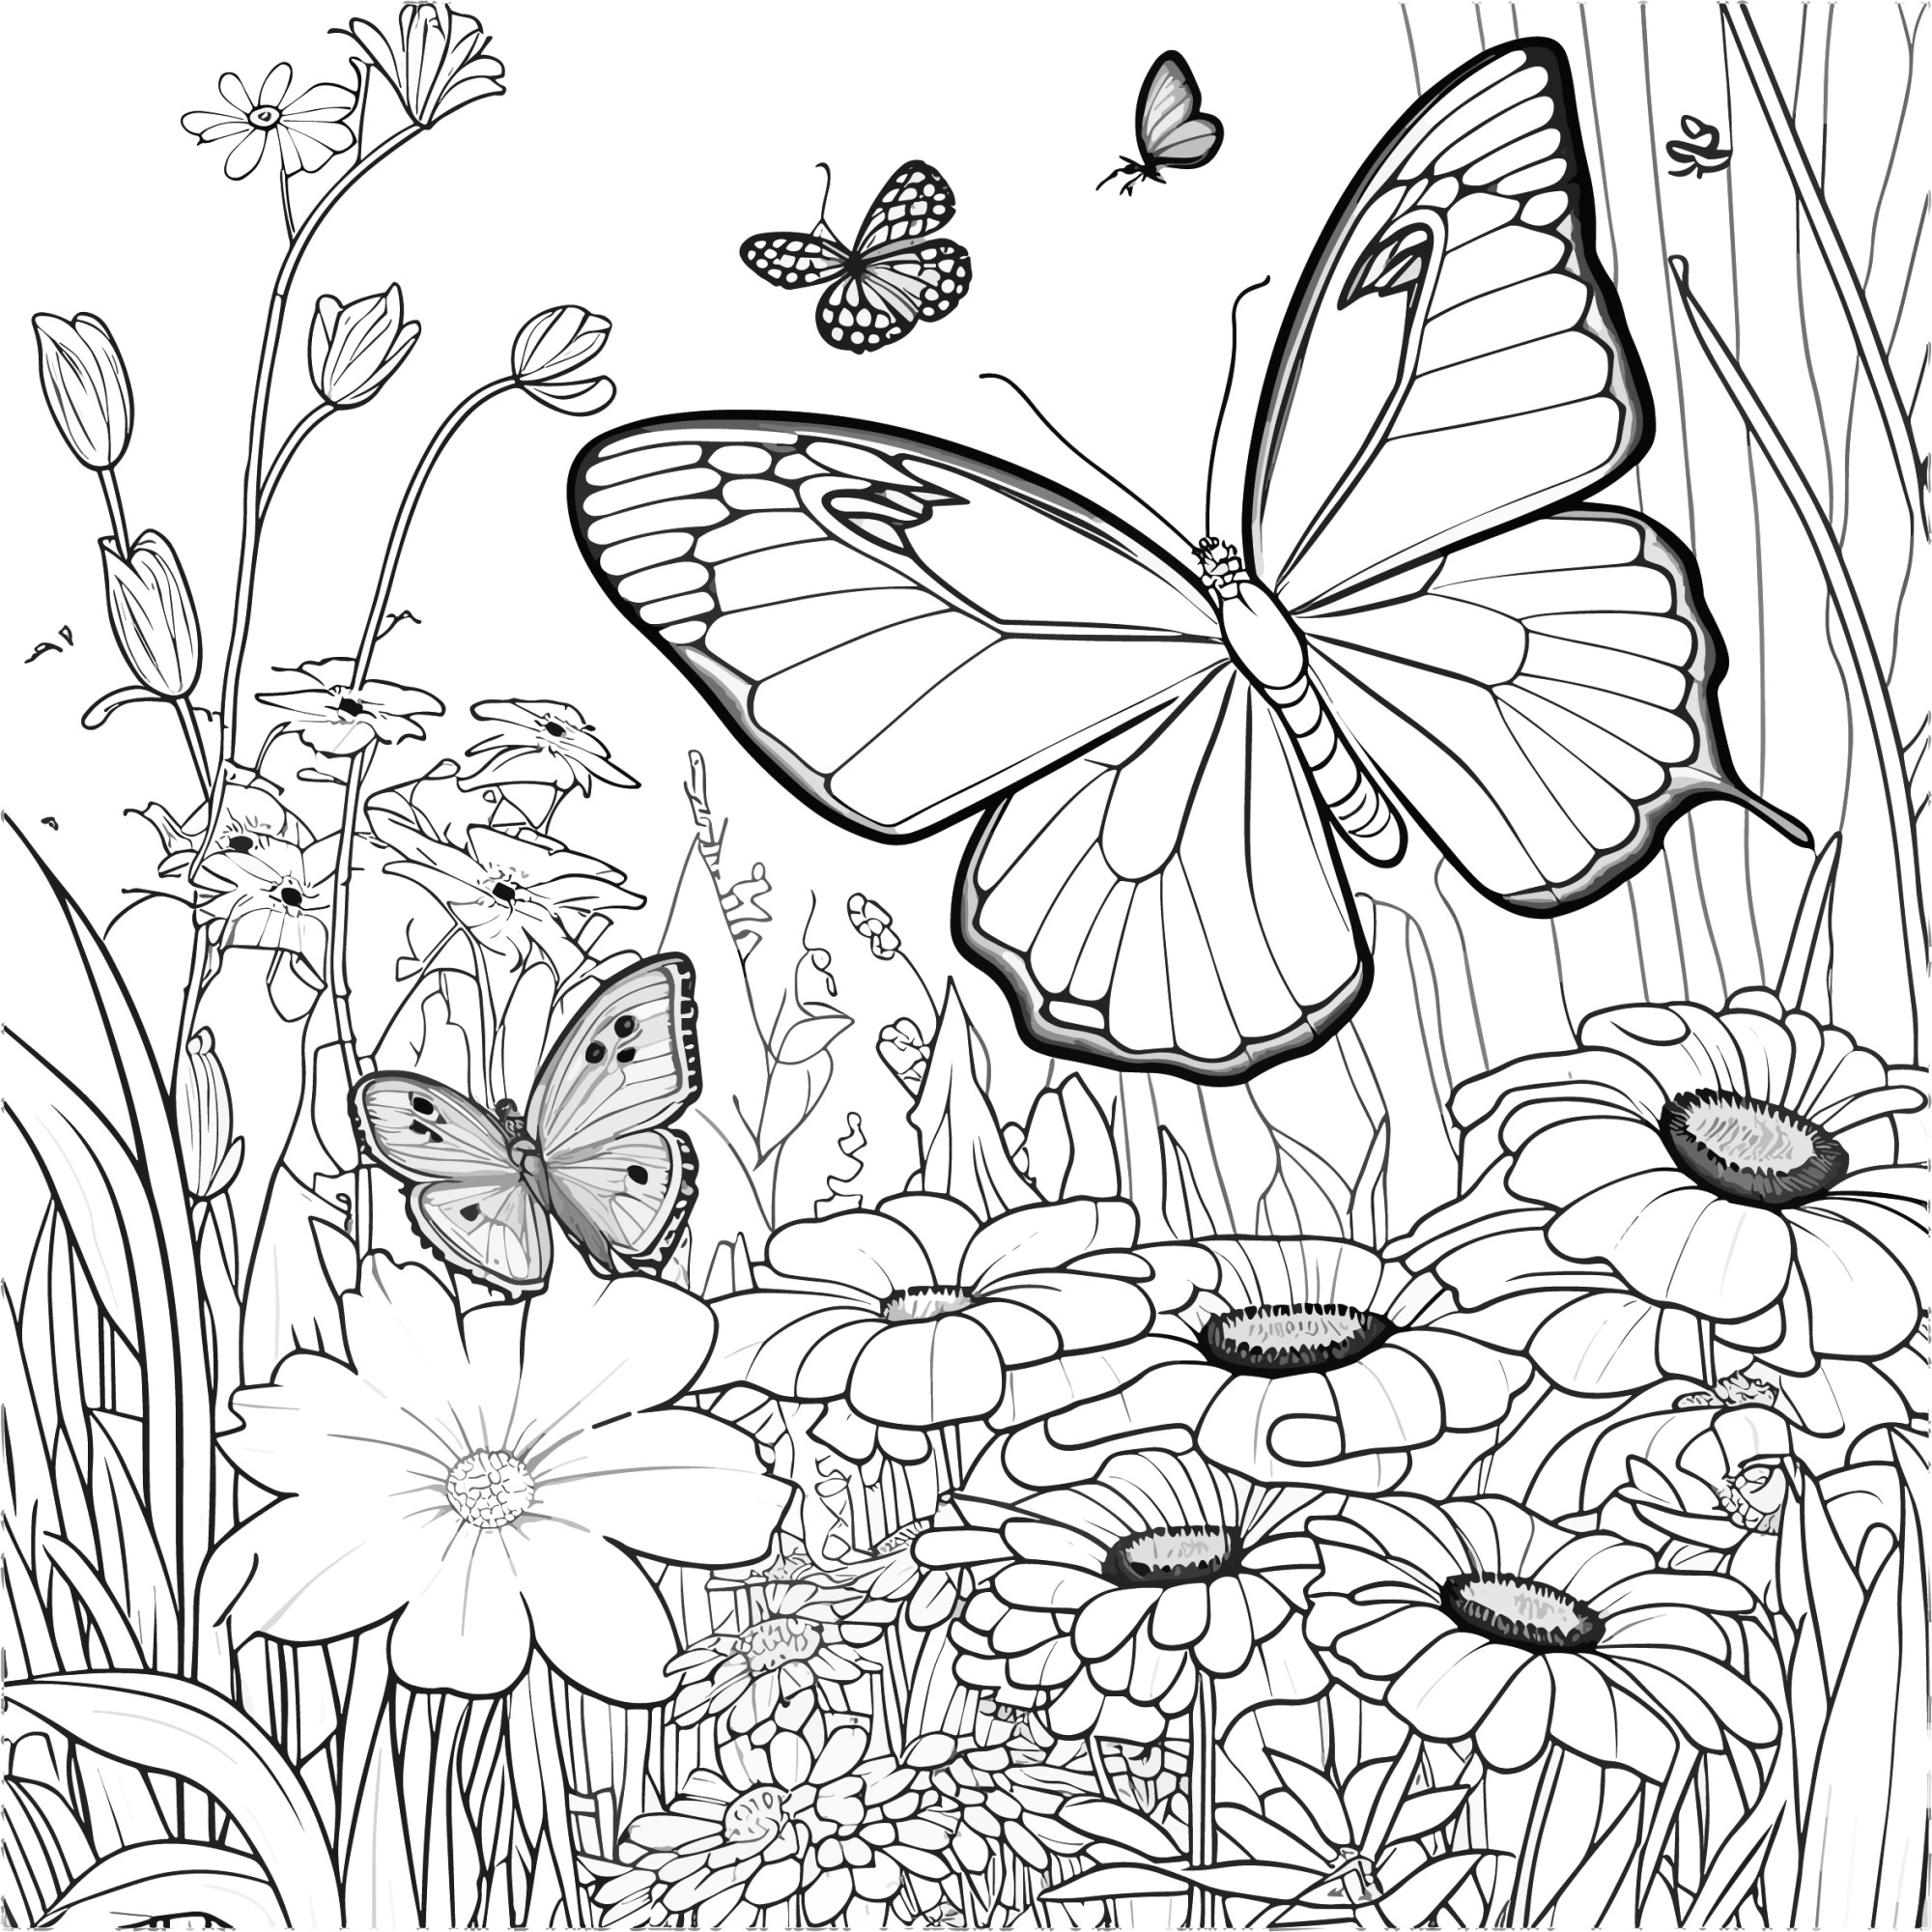 Раскраска для детей: реалистичные бабочки летают над полем с летними цветами